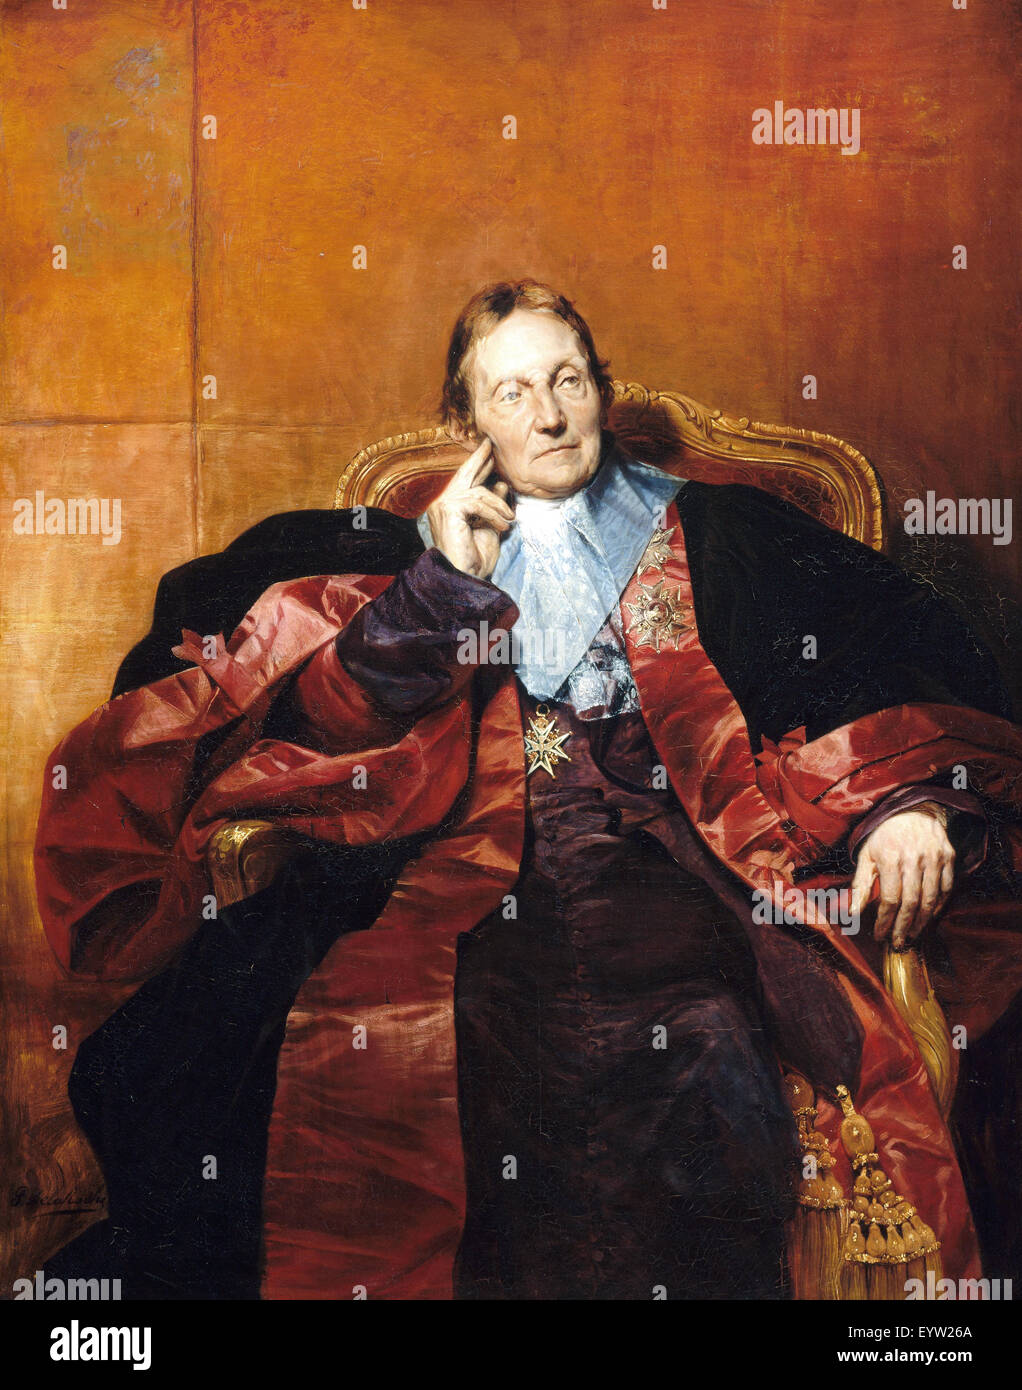 Hippolyte Delaroche, Marquis de Pastoret s 1829 Huile sur toile. Musée des beaux-arts de Boston, USA. Banque D'Images